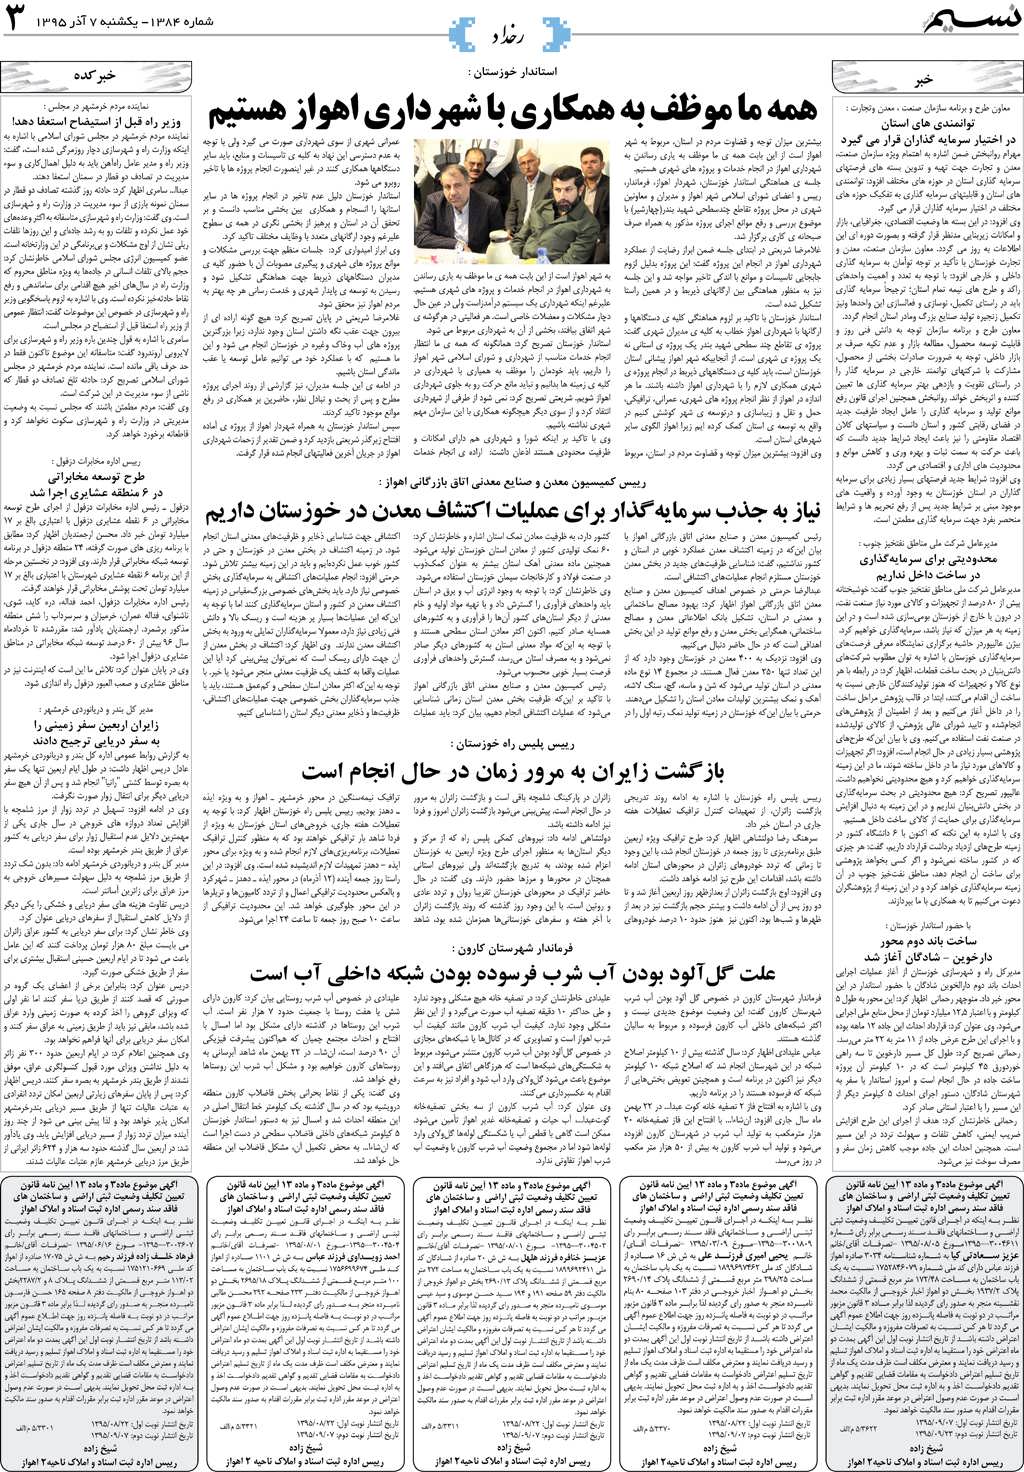 صفحه رخداد روزنامه نسیم شماره 1384